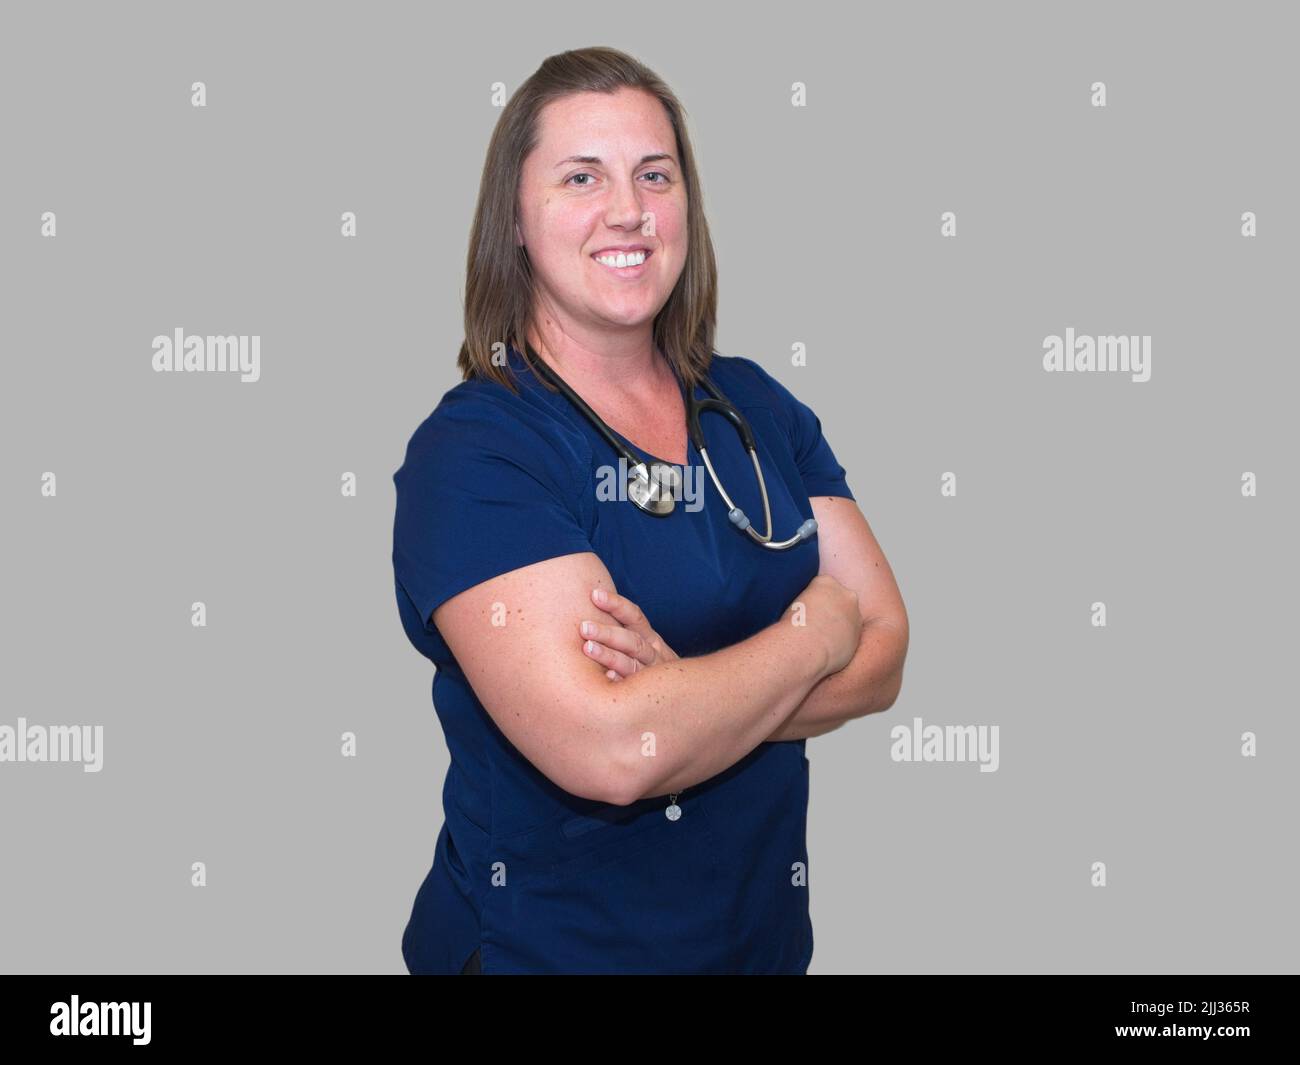 Der medizinische Beruf ist nicht einfach, aber er ist sicherlich lohnend für diese lächelnde Krankenschwester Praktikerin. Stockfoto